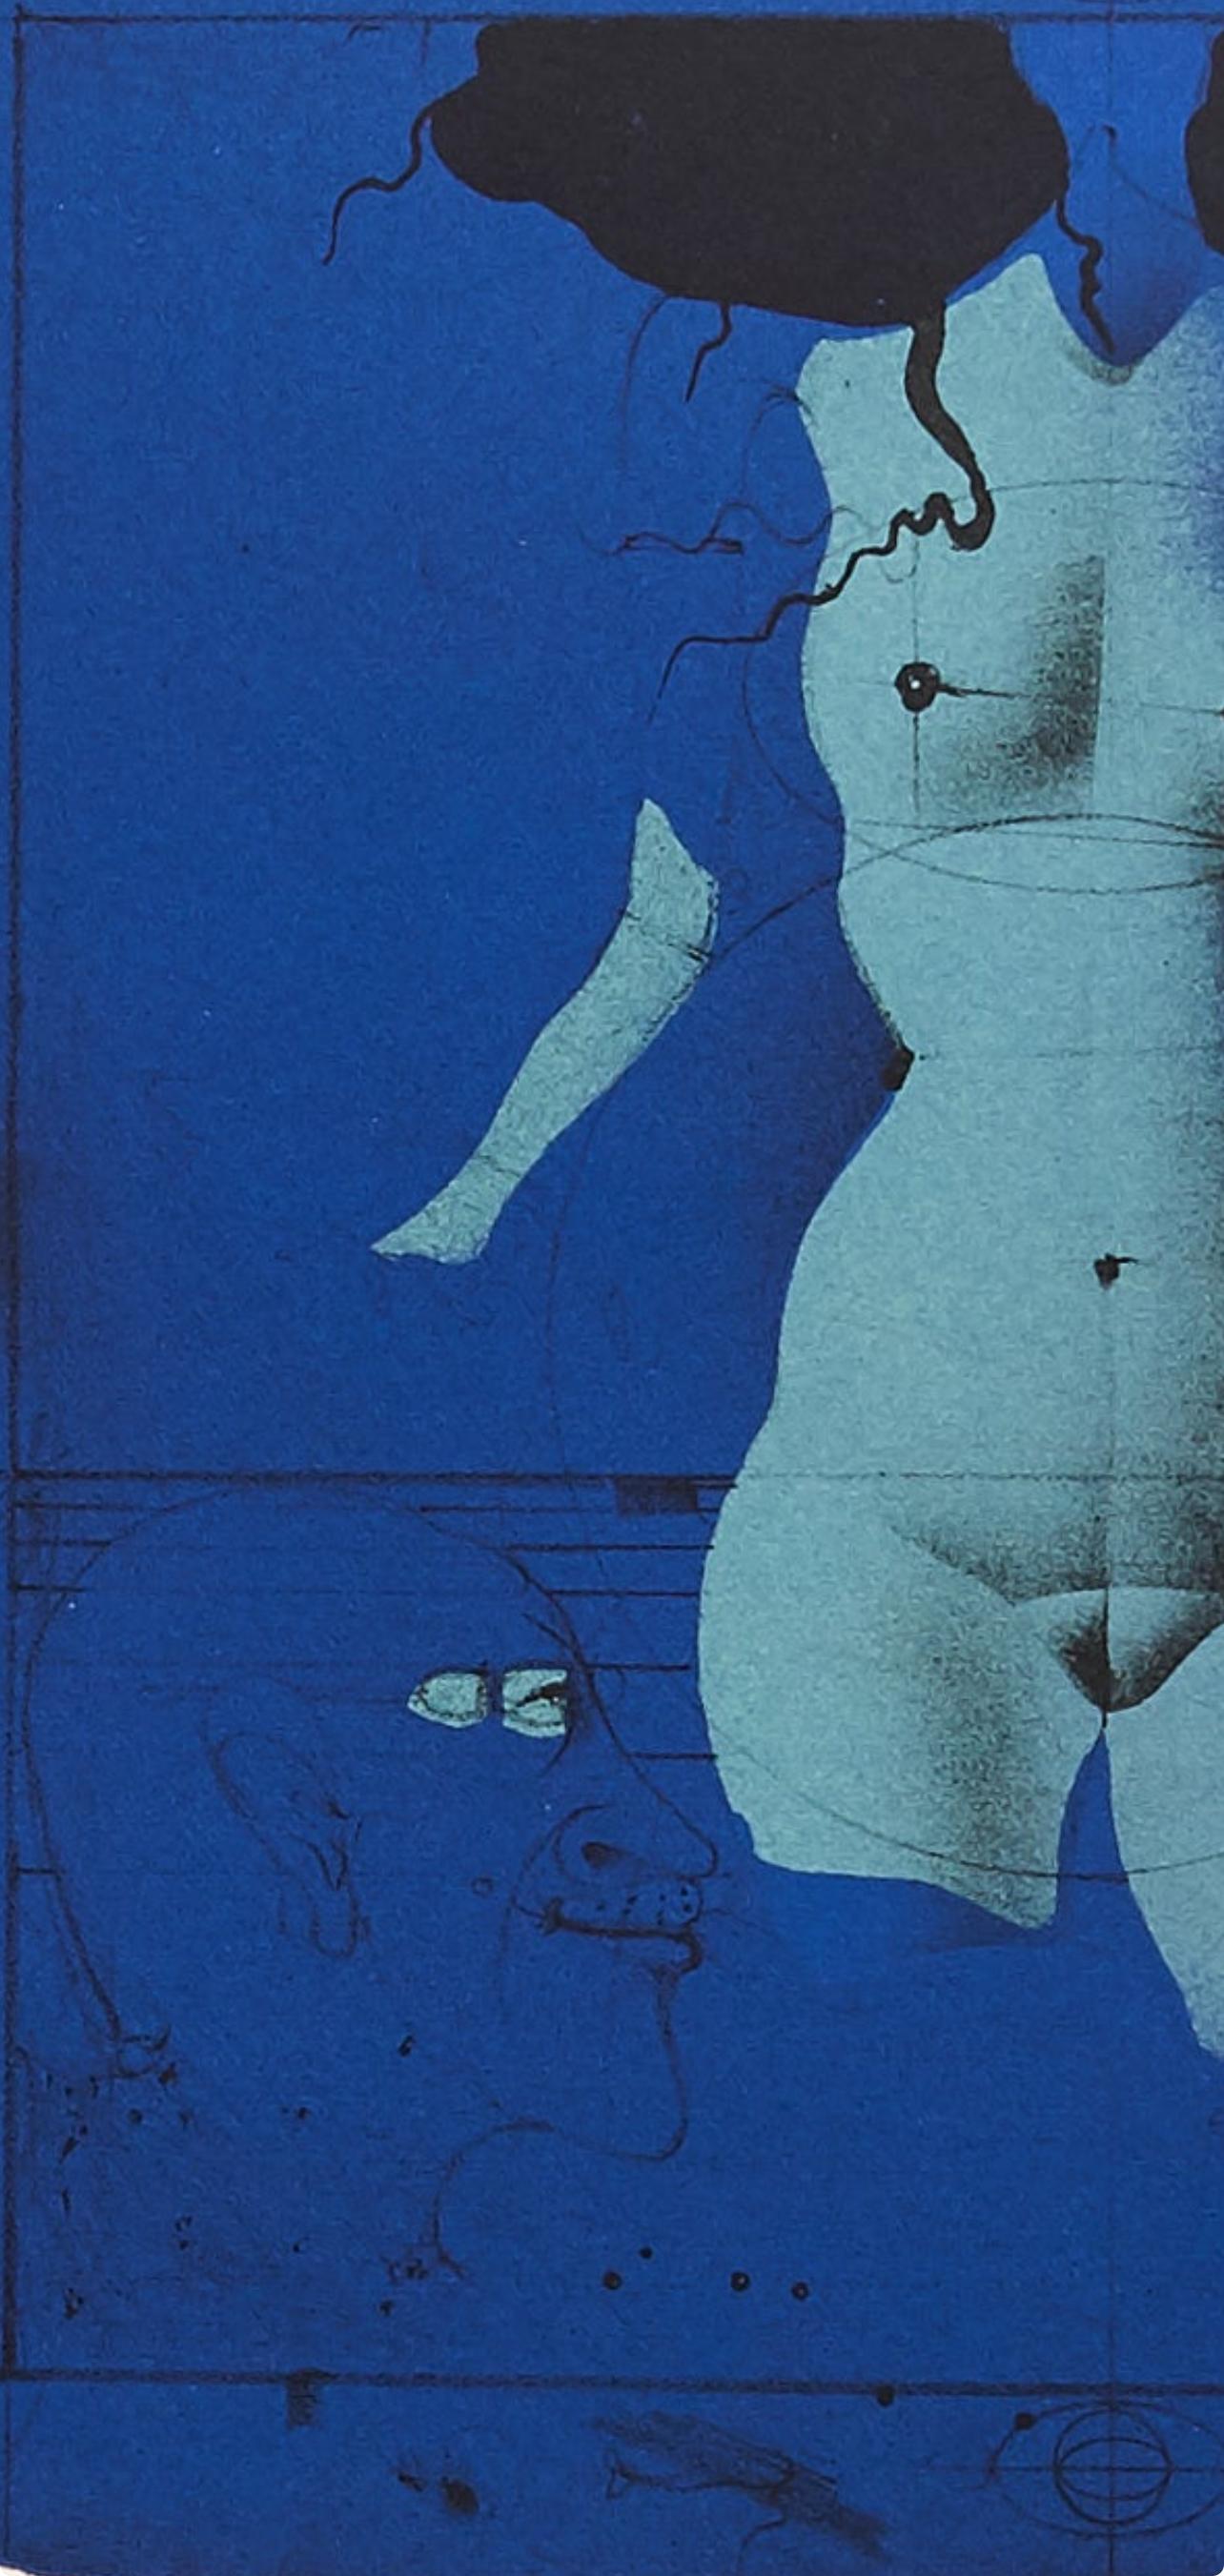 Wunderlich, Torso sur une pierre bleu, Souvenirs et portraits d'artistes (after) - Modern Print by Paul Wunderlich